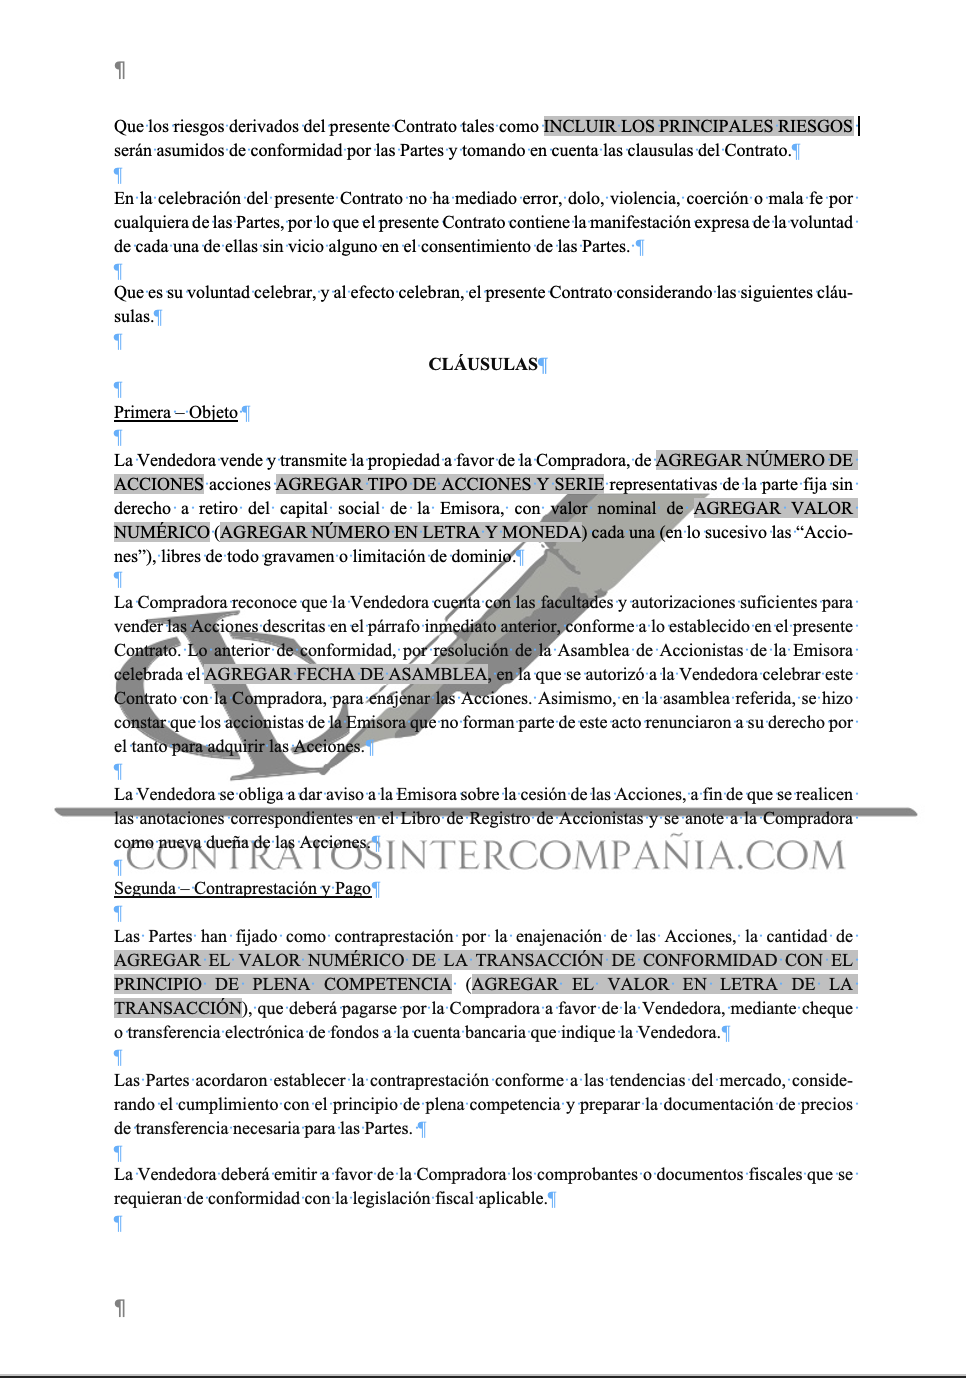 Contrato de compra-venta de acciones - Contratos Intercompañía